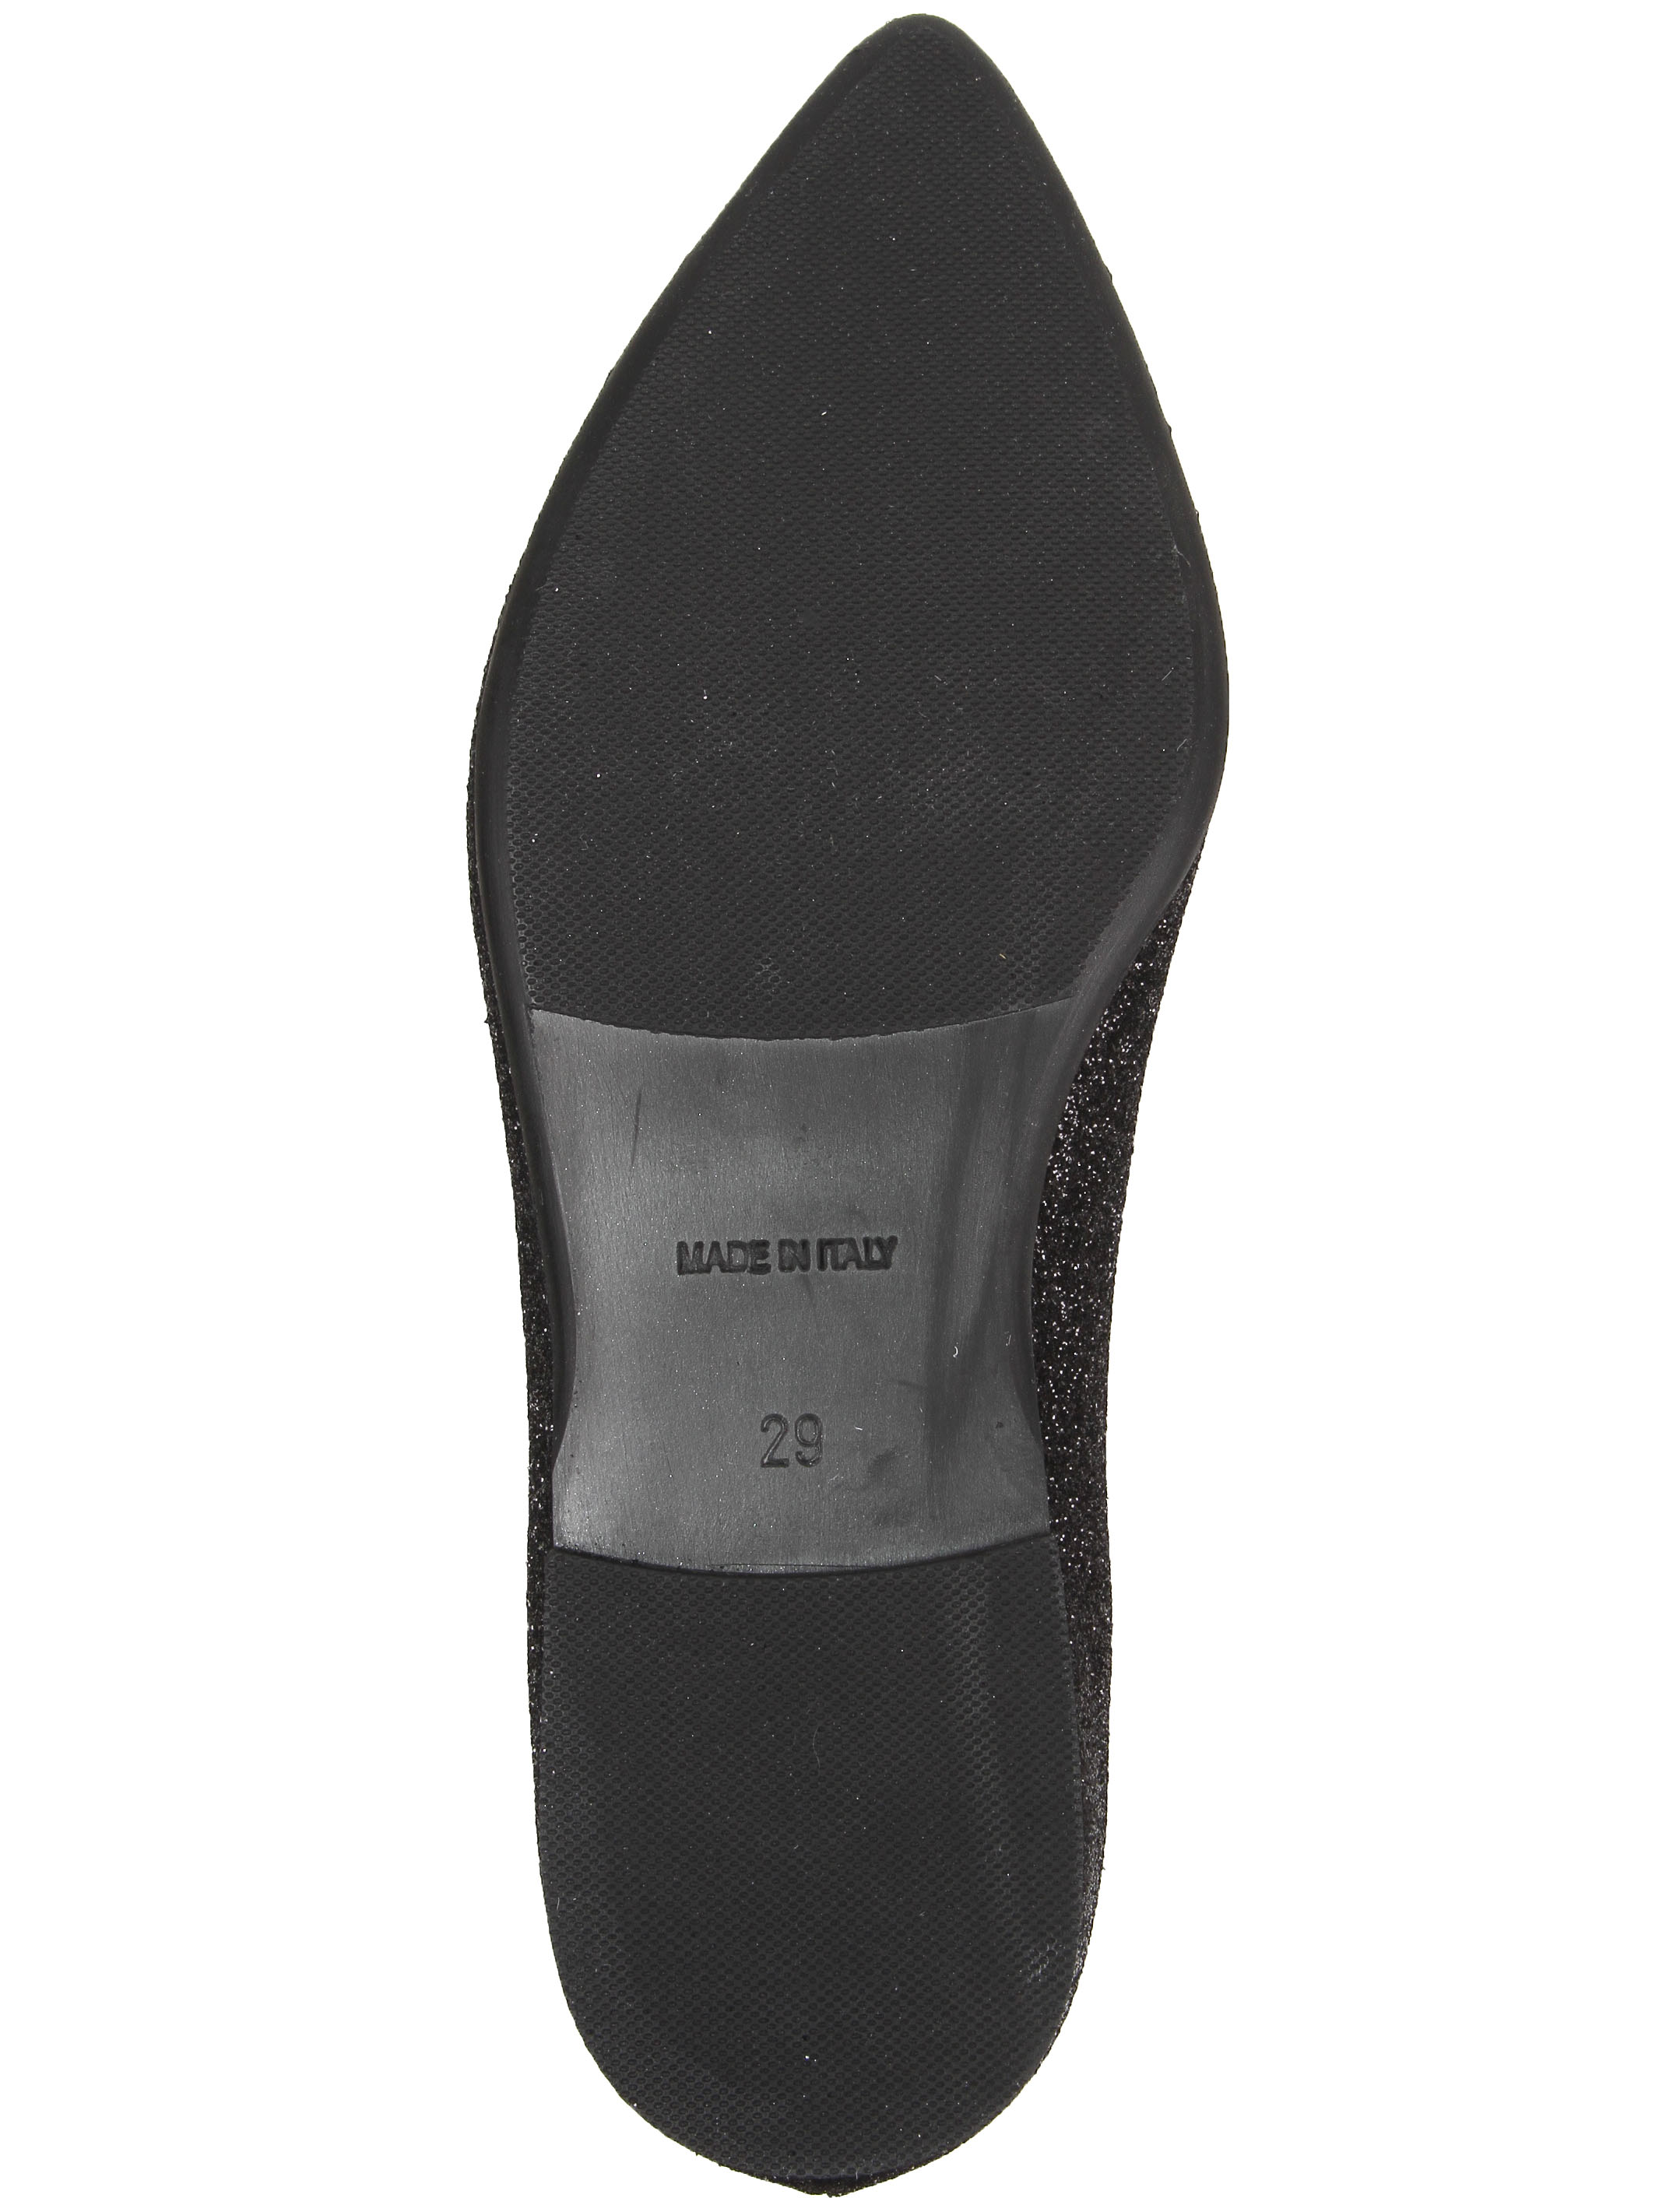 Туфли Florens 2250481, цвет черный, размер 29 2014509081451 - фото 5